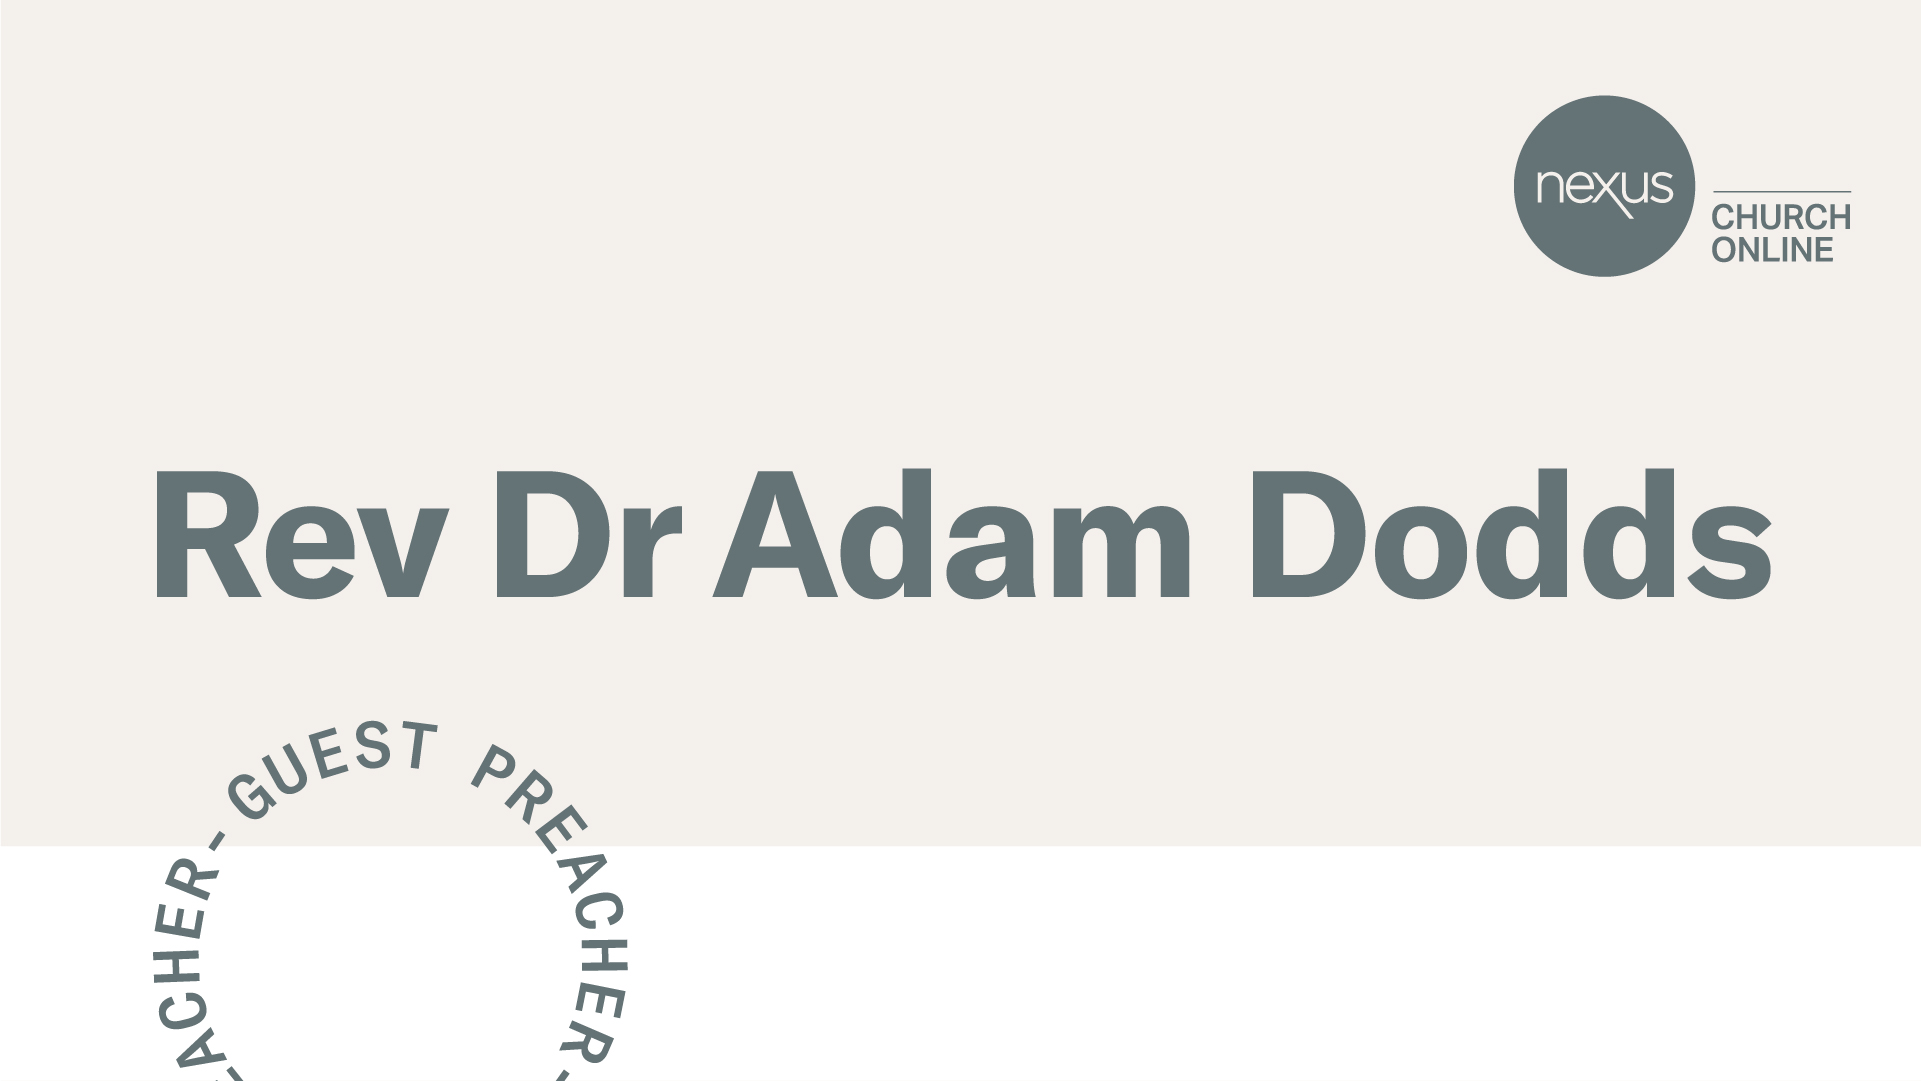 Rev Dr Adam Dodds